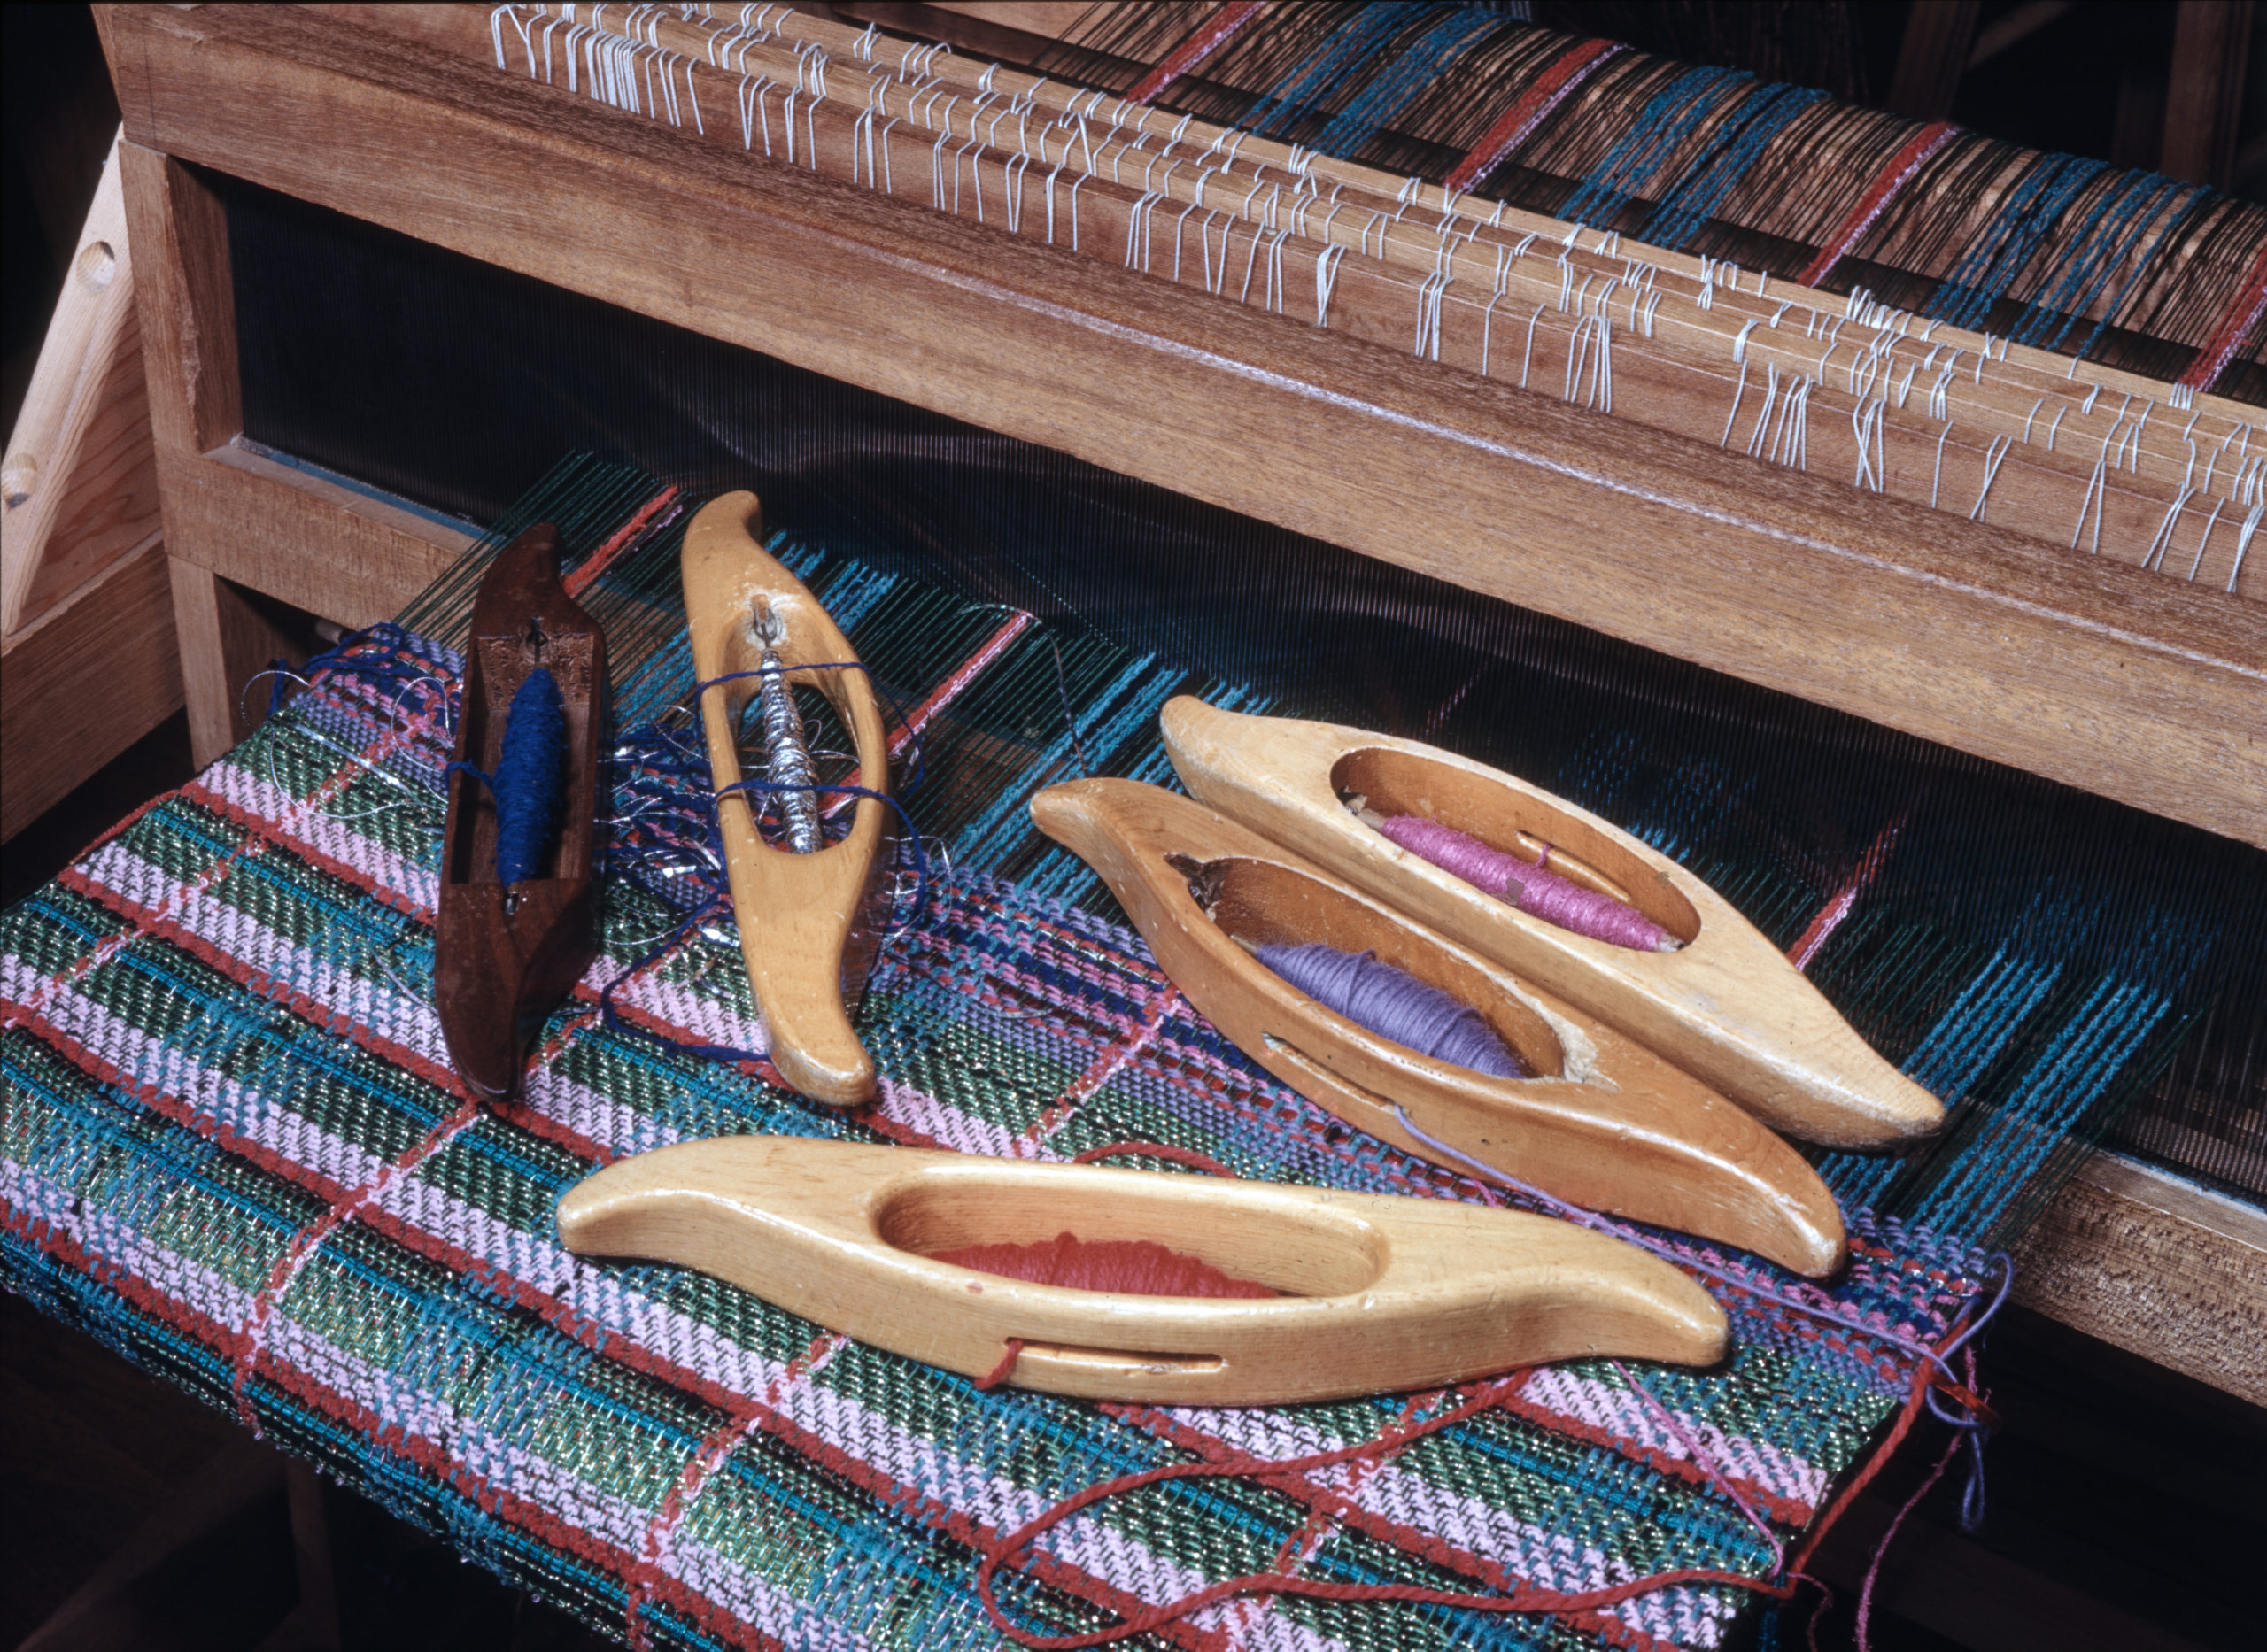 Five oblong wooden loom shuttles scattered across a fabric in progress in a loom.